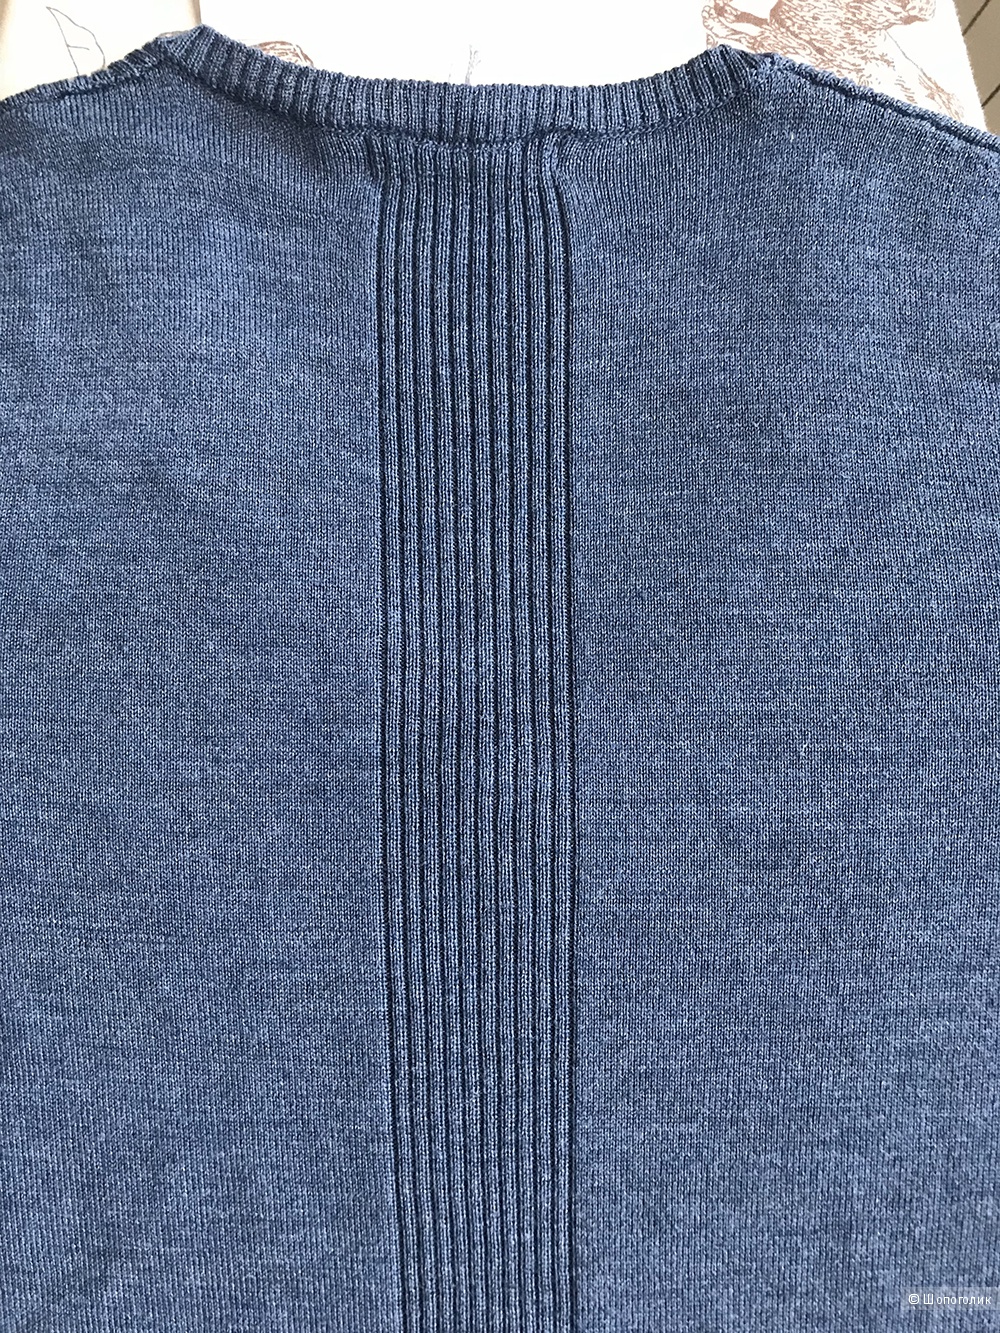 Пуловер Woolowers 100% меринос, размер S